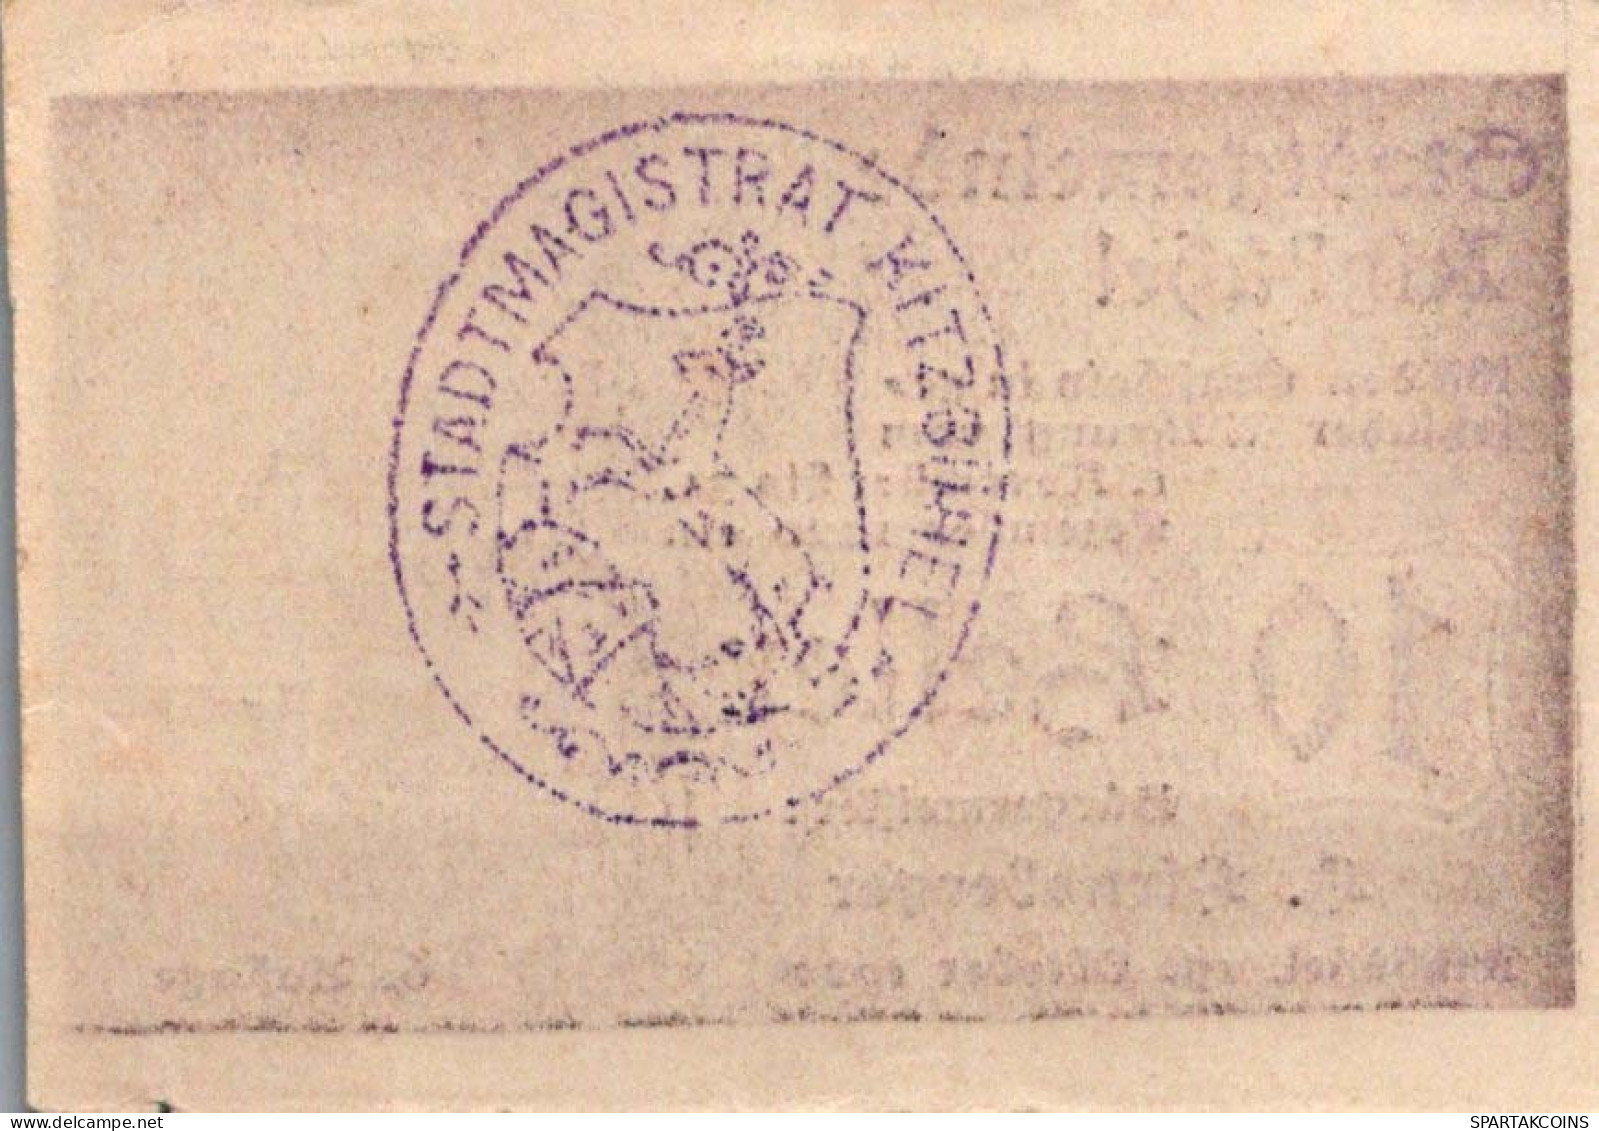 10 HELLER 1920 Stadt KITZBÜHEL Tyrol Österreich Notgeld Banknote #PD684 - Lokale Ausgaben